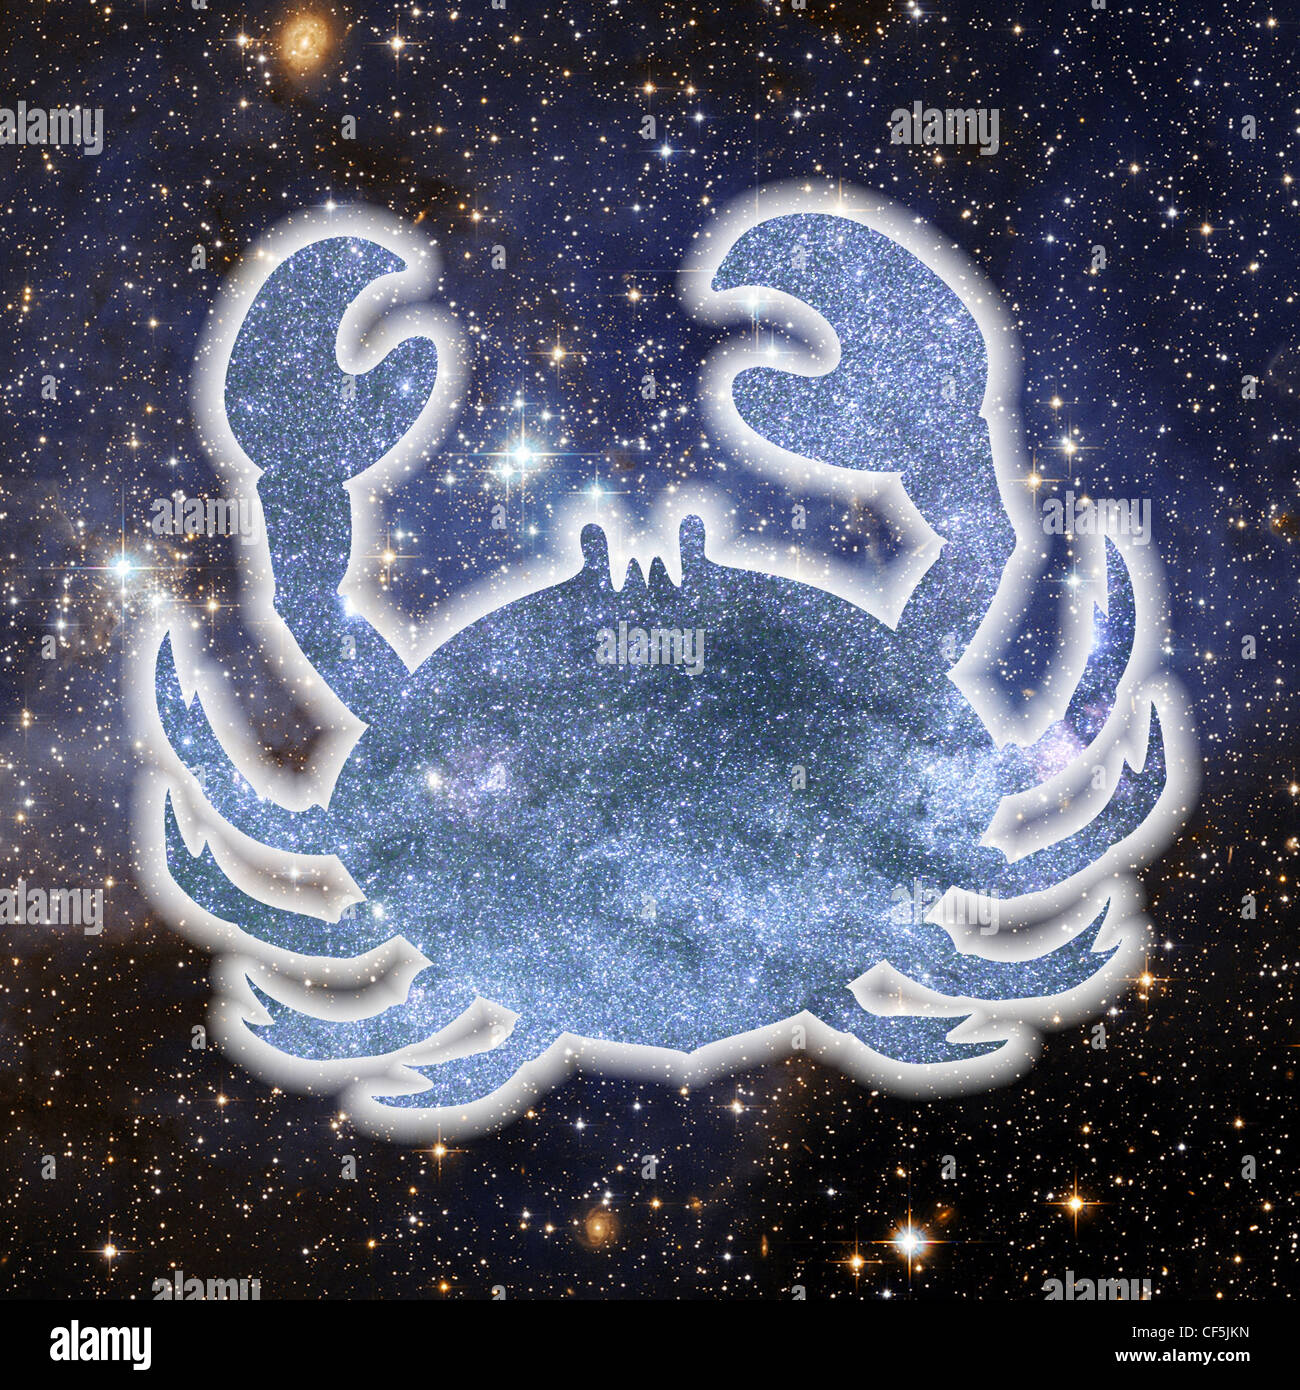 Una illustrazione della silhouette di un granchio composta di stelle, impostata su uno sfondo di spazio riempito di stelle Foto Stock